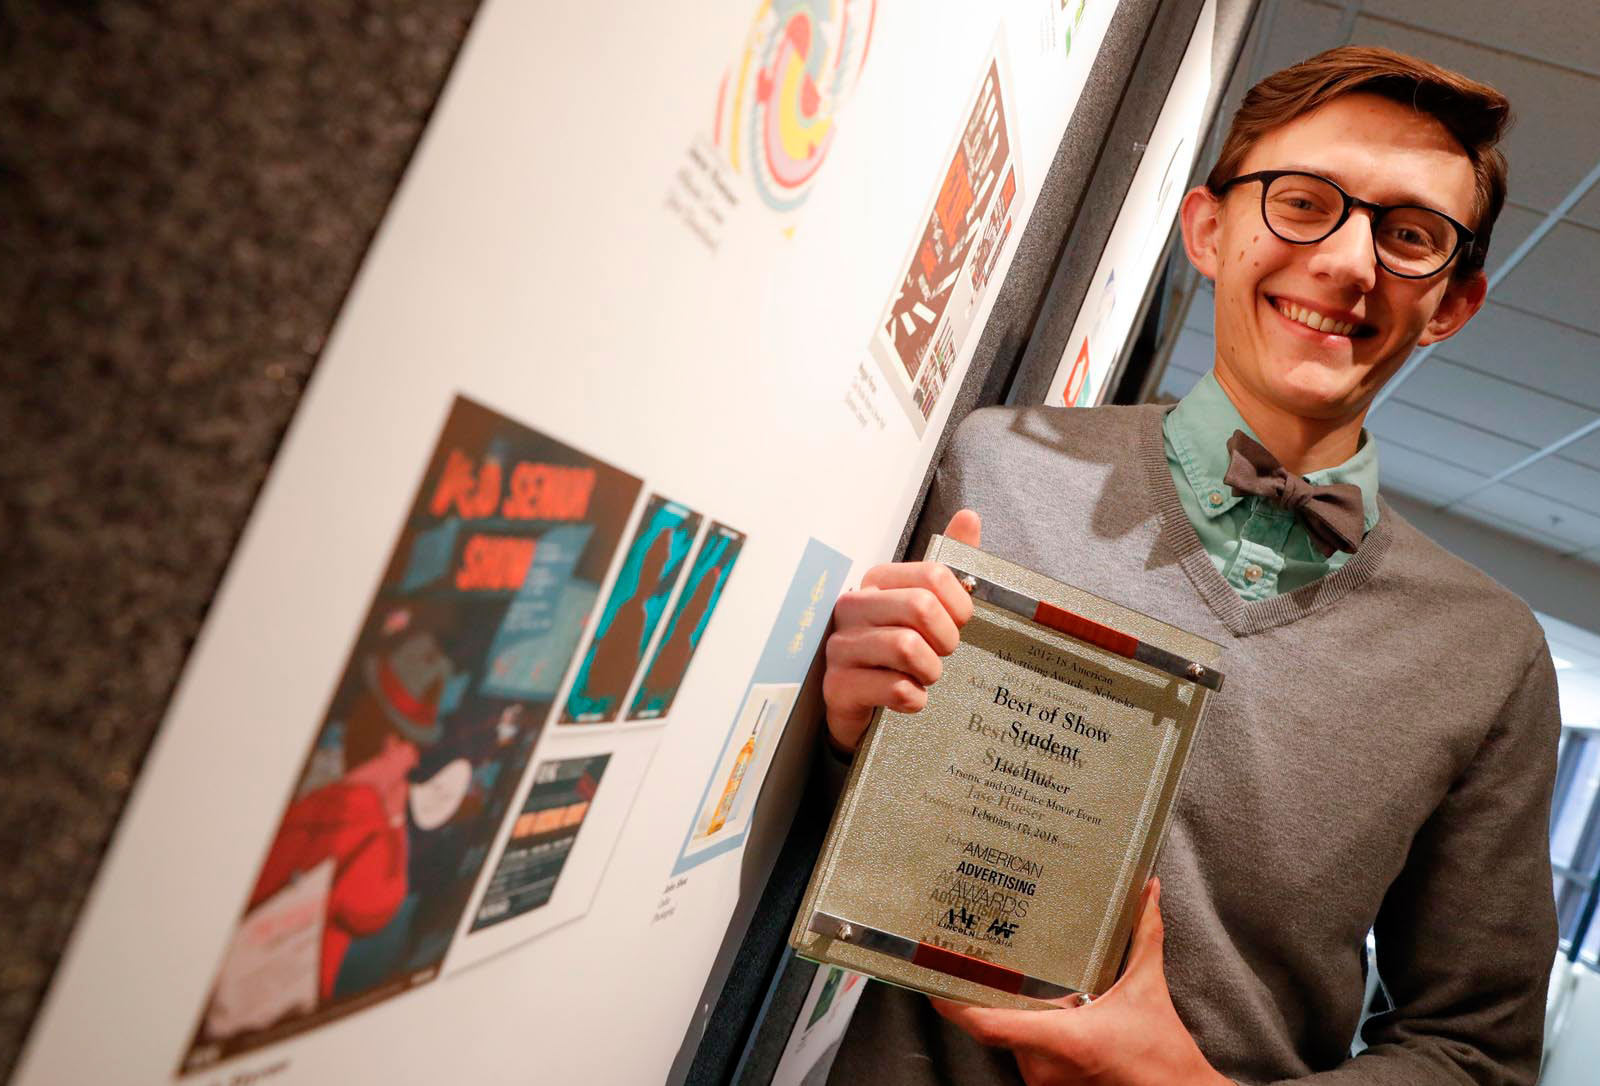 Jase Hueser proudly holding ADDY award